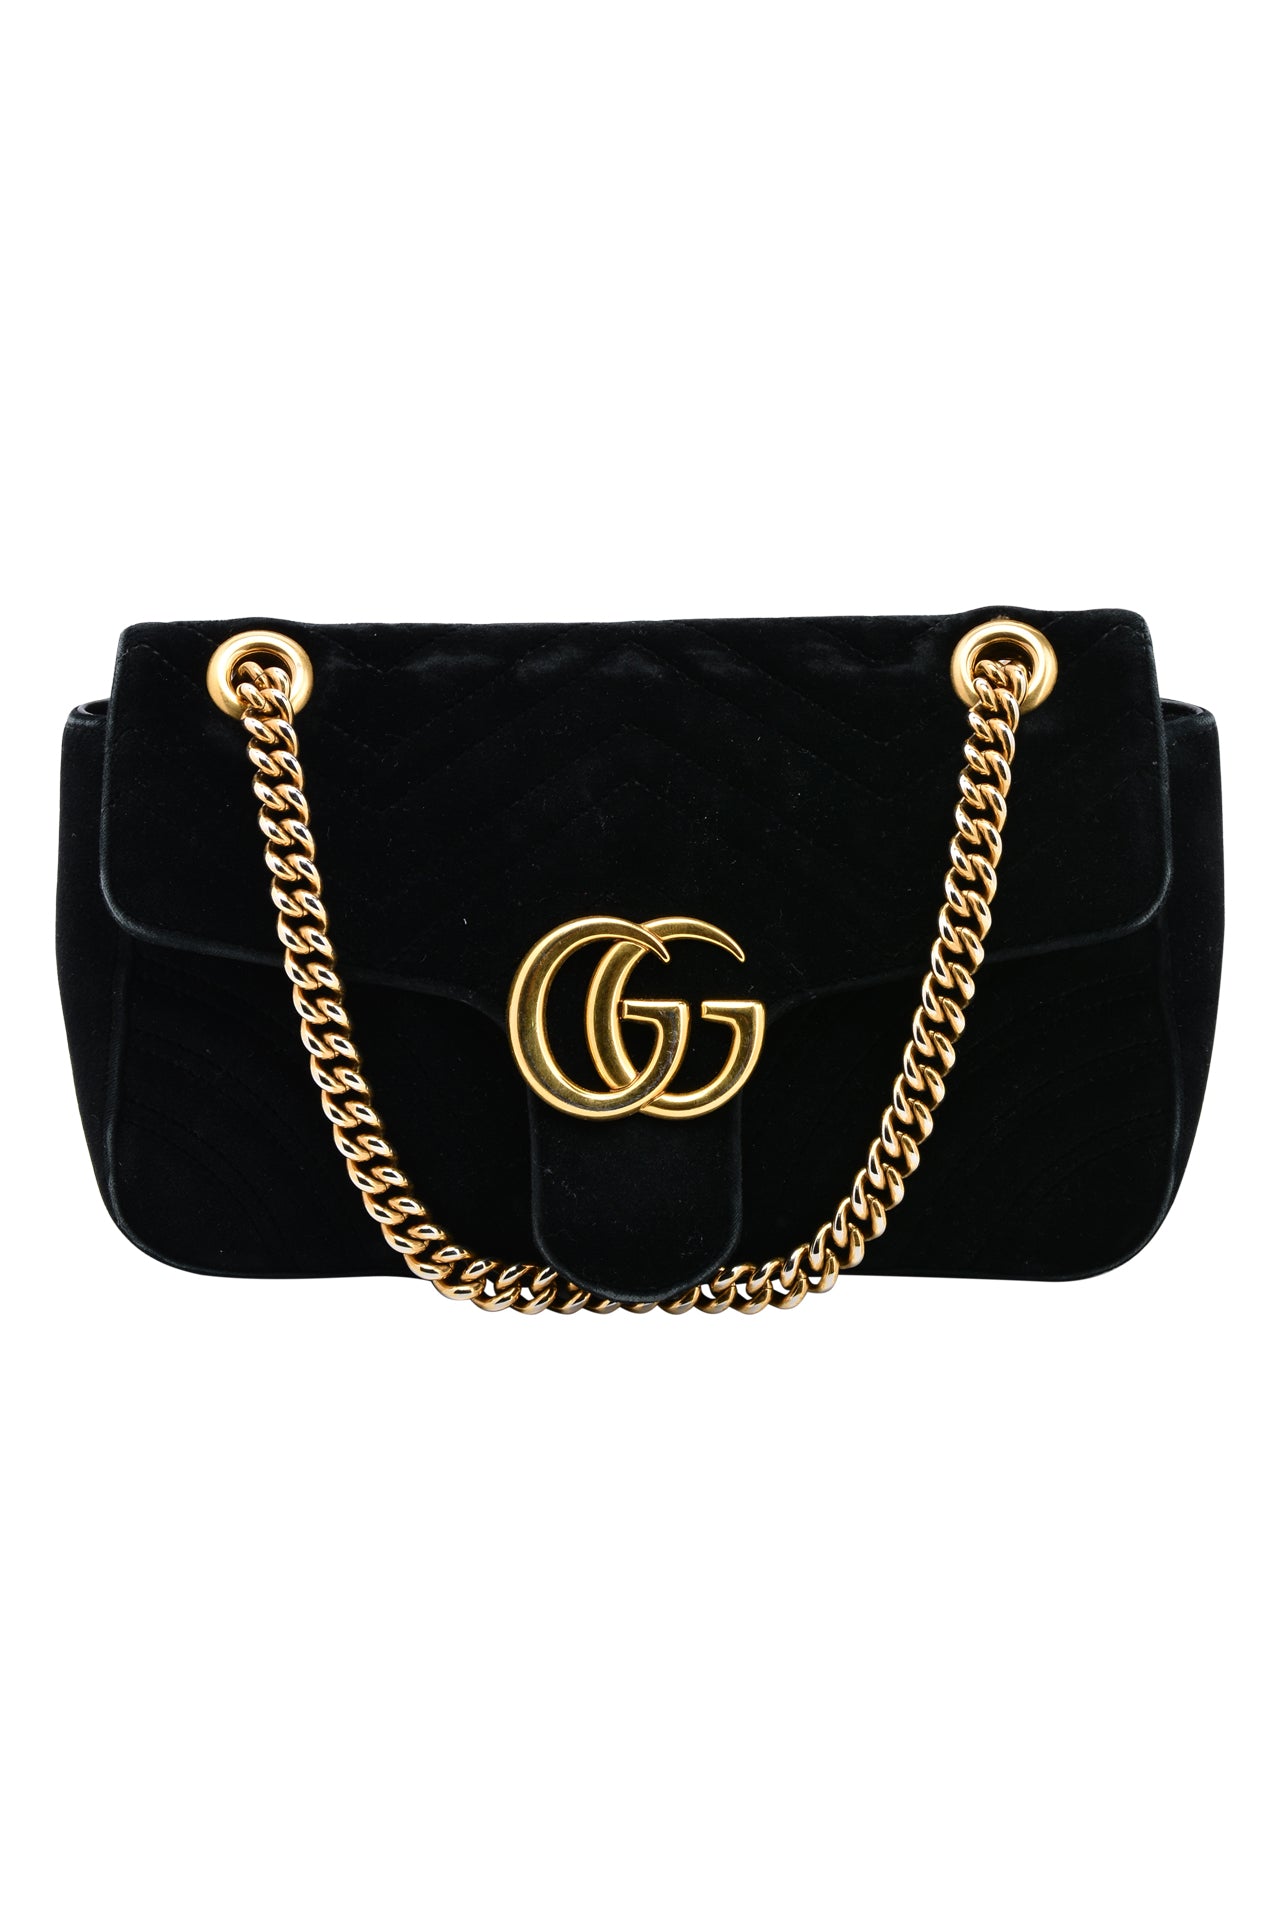 Gucci GG Black Matelasse Velvet Small Bag